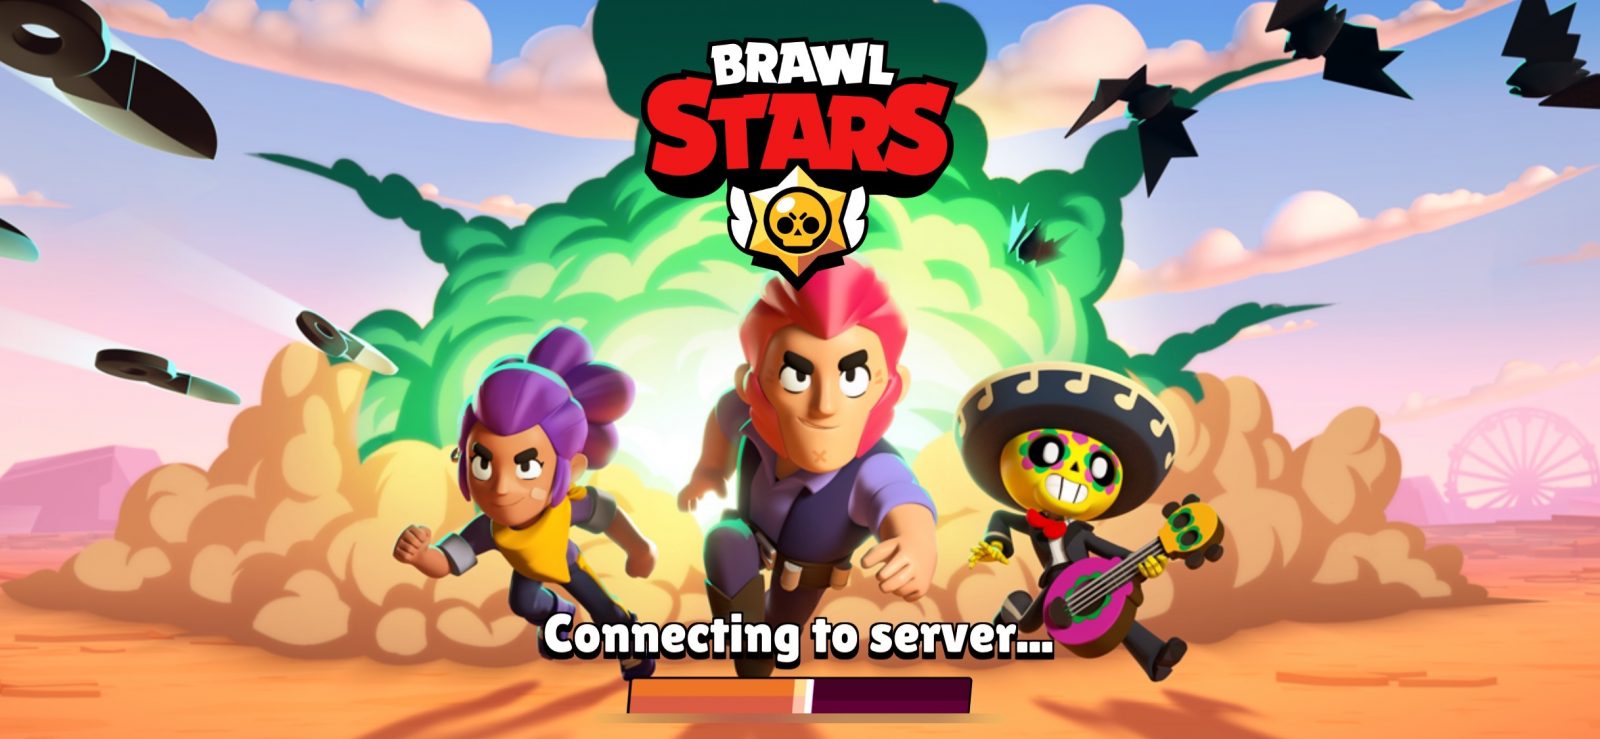 Brawl Stars The Casual App Gamer - brawl stars mega fight tactics